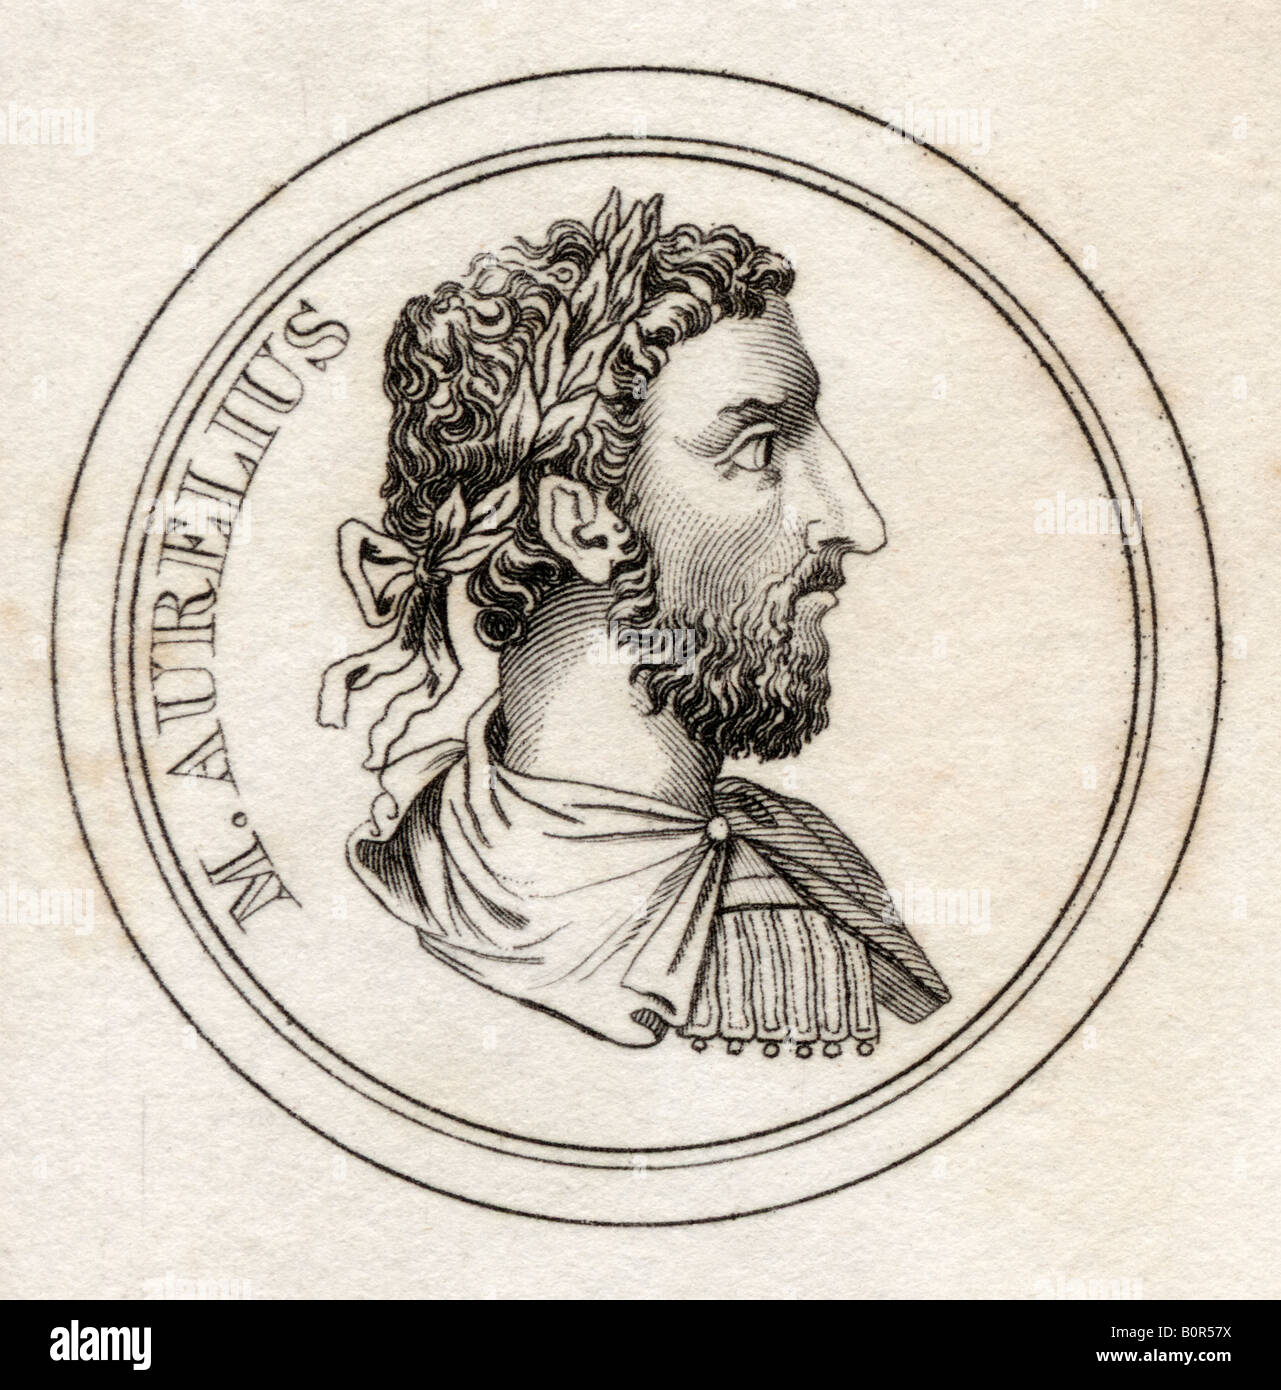 Marcus Aurelius, 121 - 180 empereur romain A.D. Tiré du livre Crabbs Historical Dictionary, publié en 1825. Banque D'Images